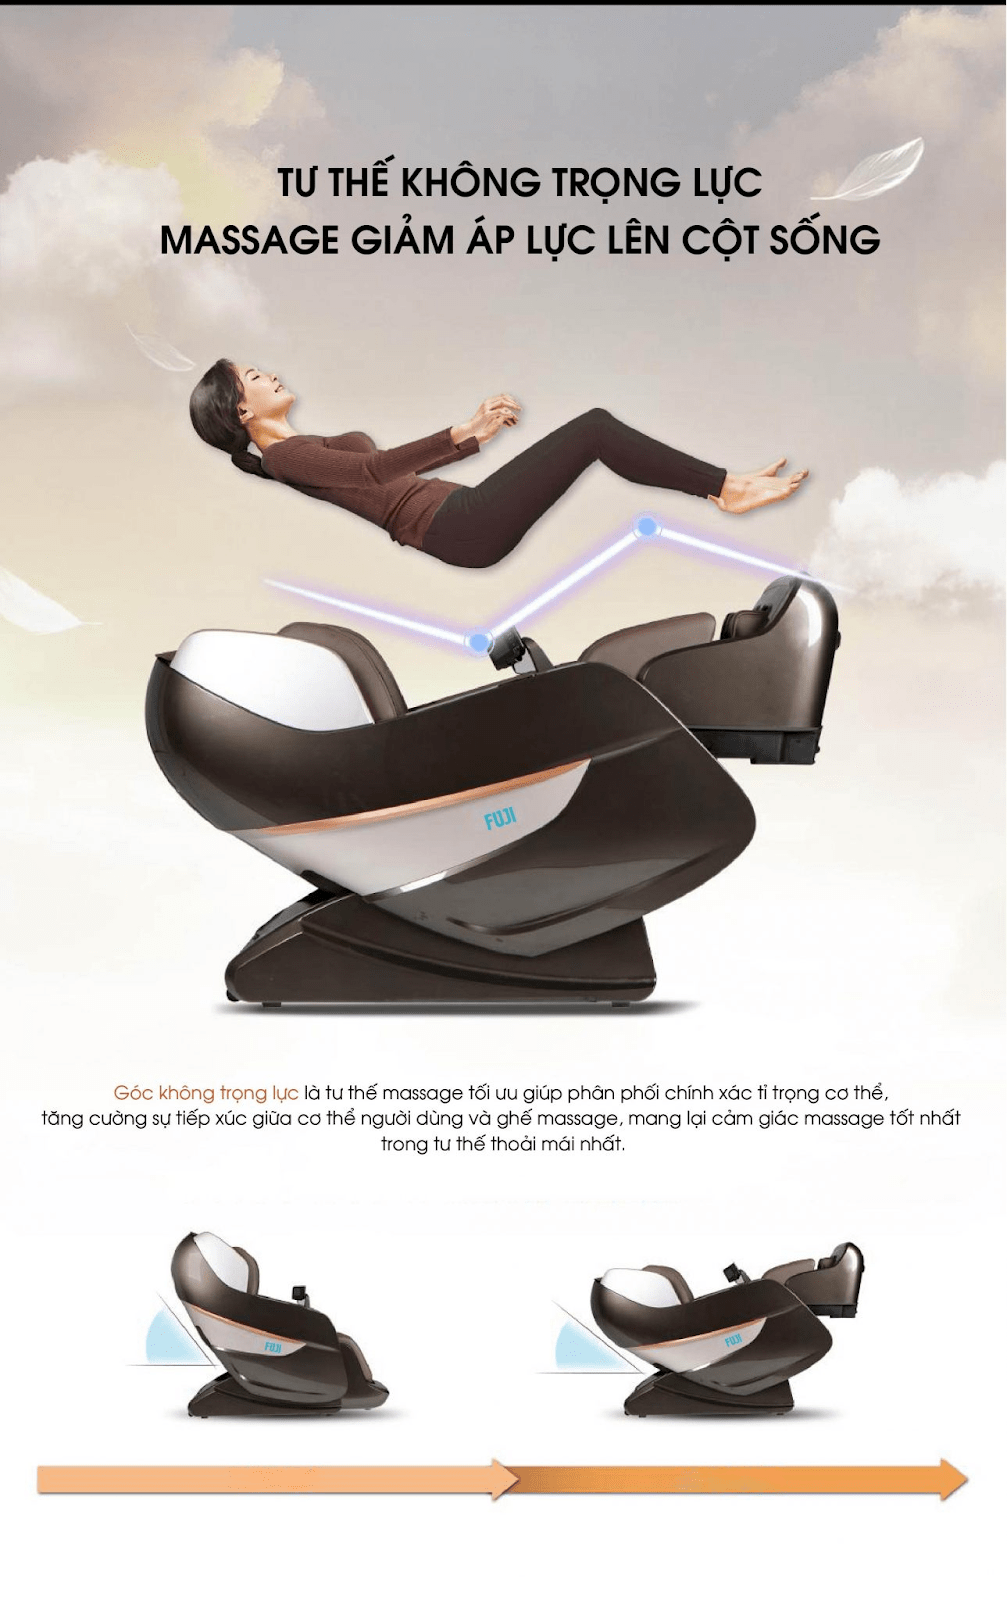 Bạn đã biết những công dụng tuyệt vời của ghế massage